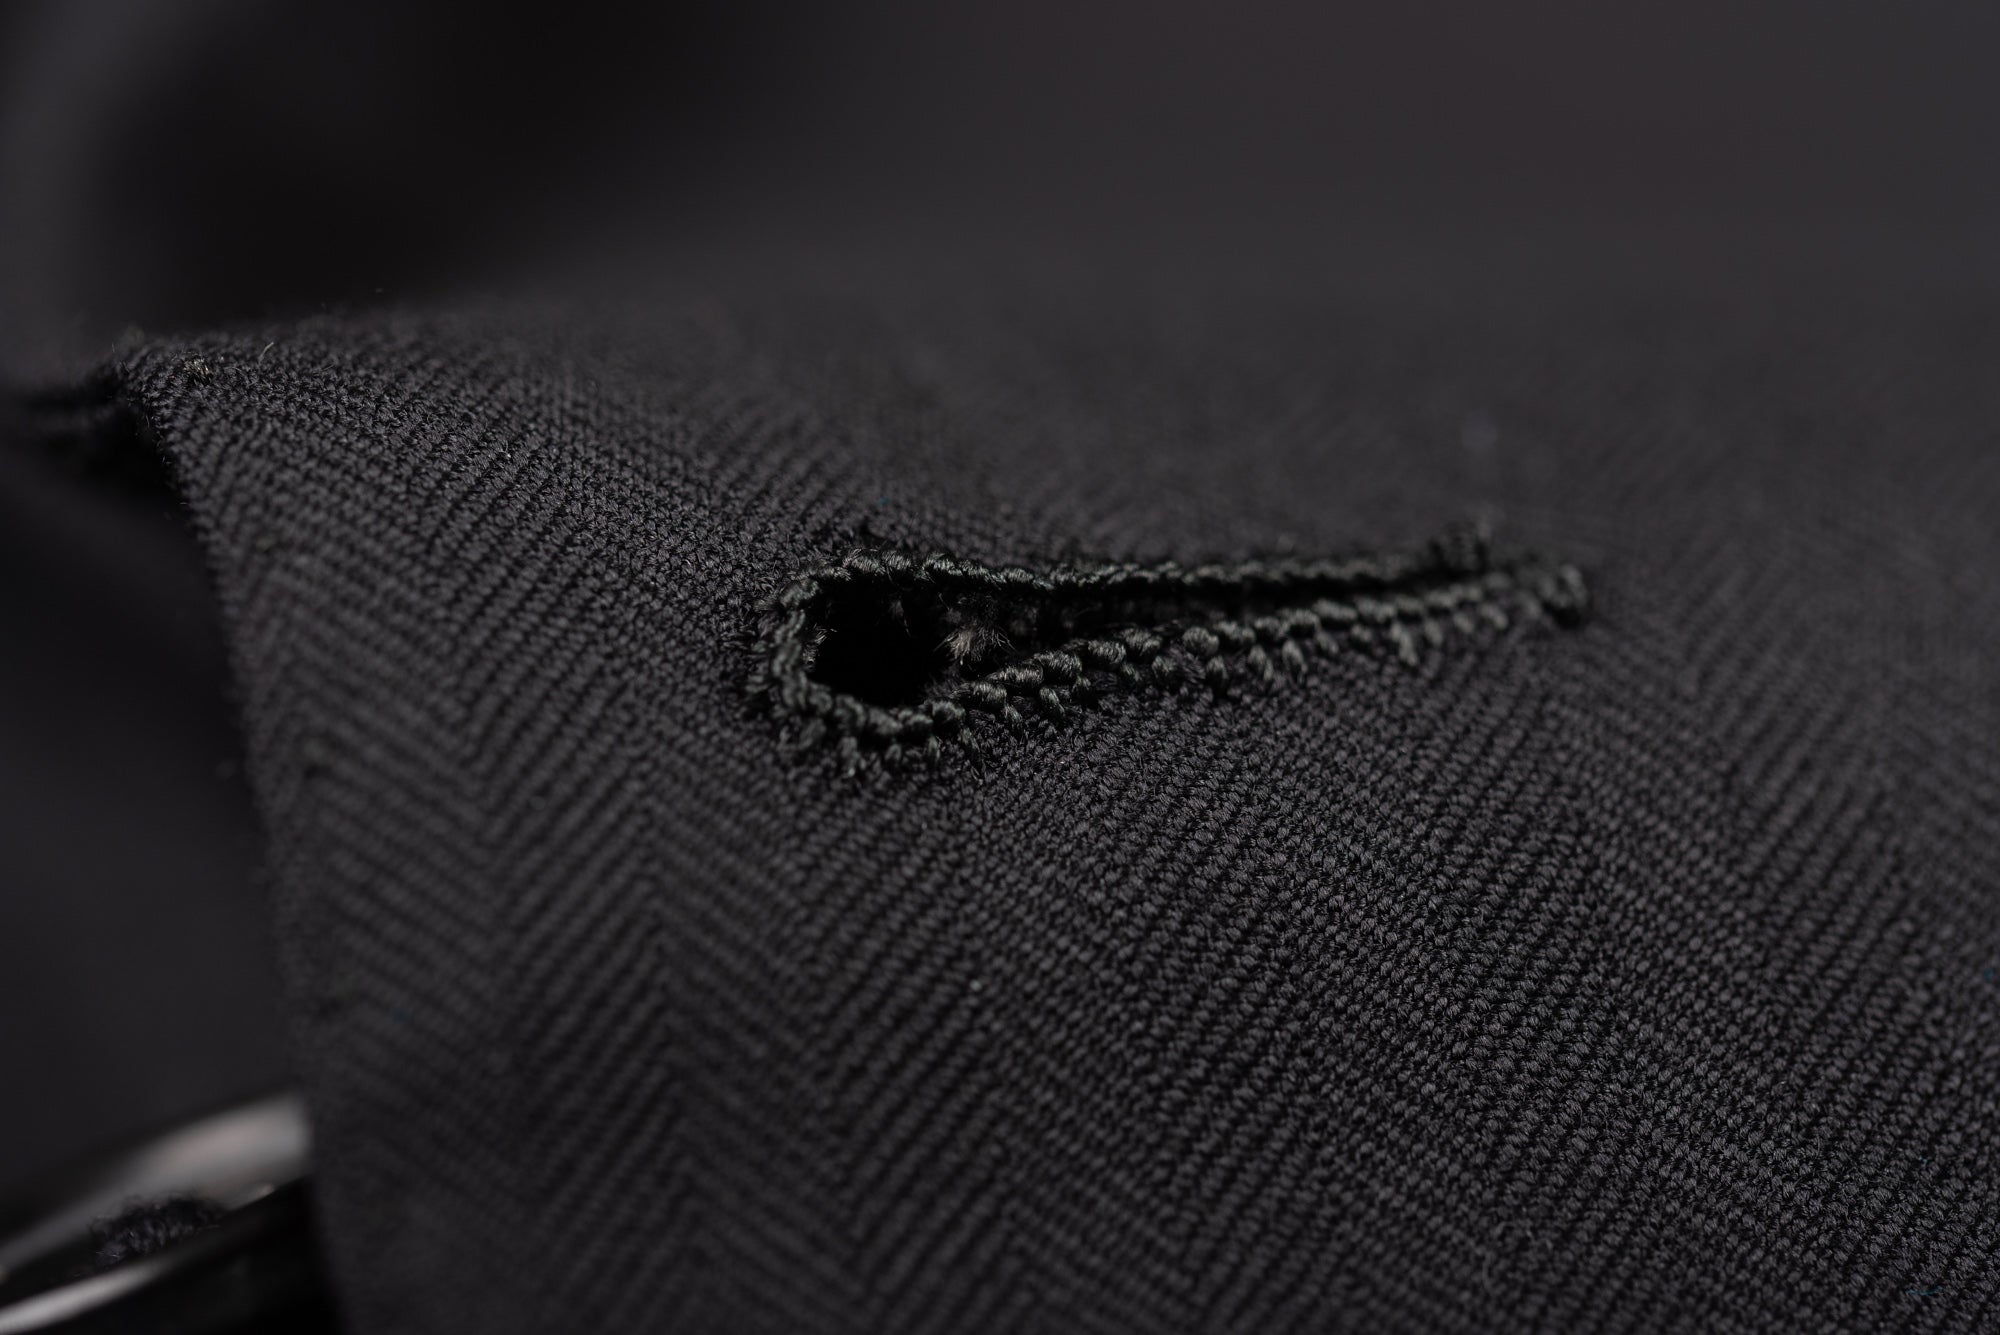 BERNINI Handmade Black Herringbone Wool Super 120's Suit EU 56 NEW US 46 Long BERNINI